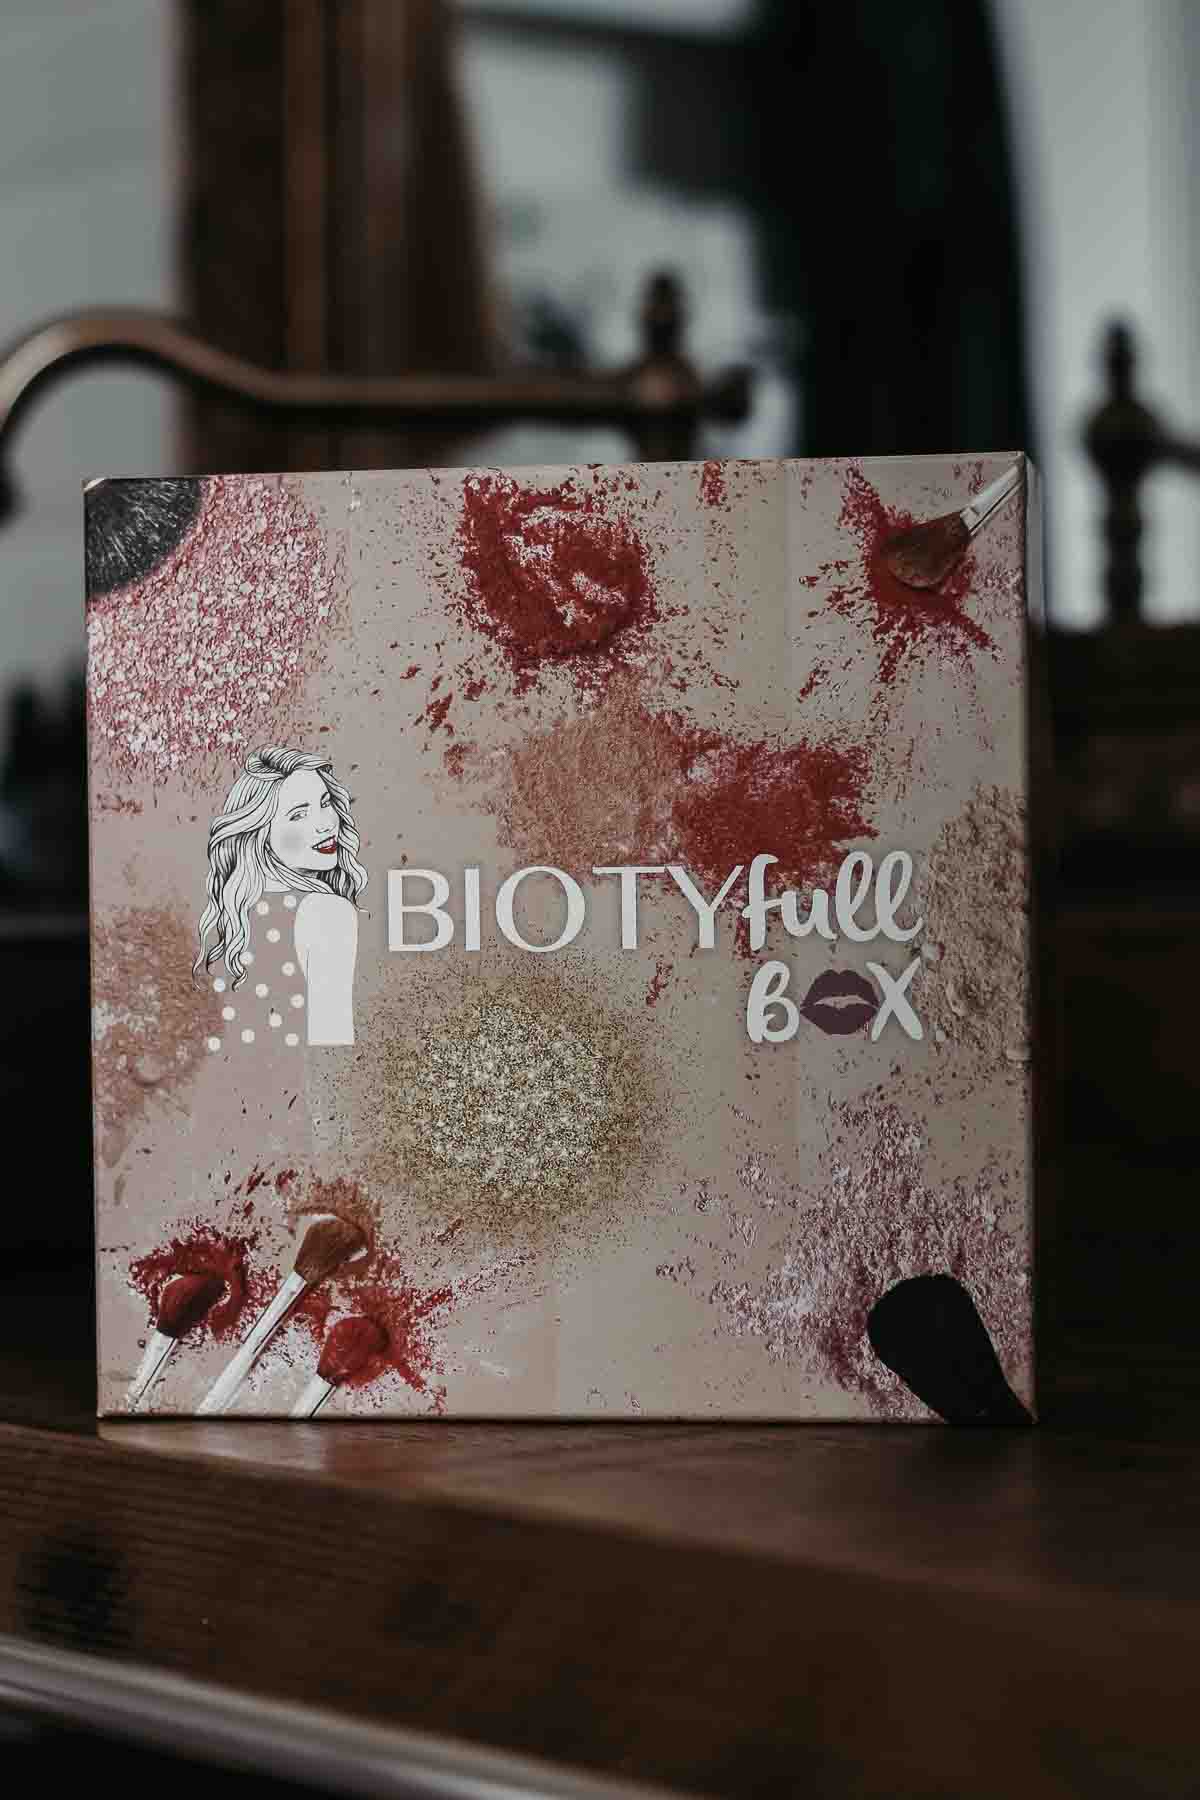 Biotyfull Box octobre 2020 : Teint Parfait